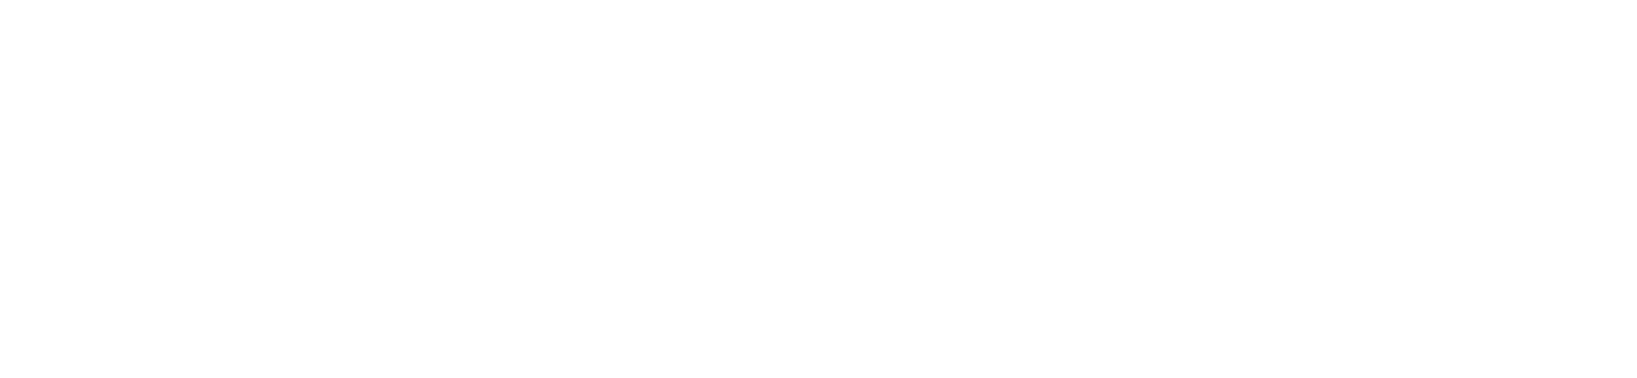 GauchoCode